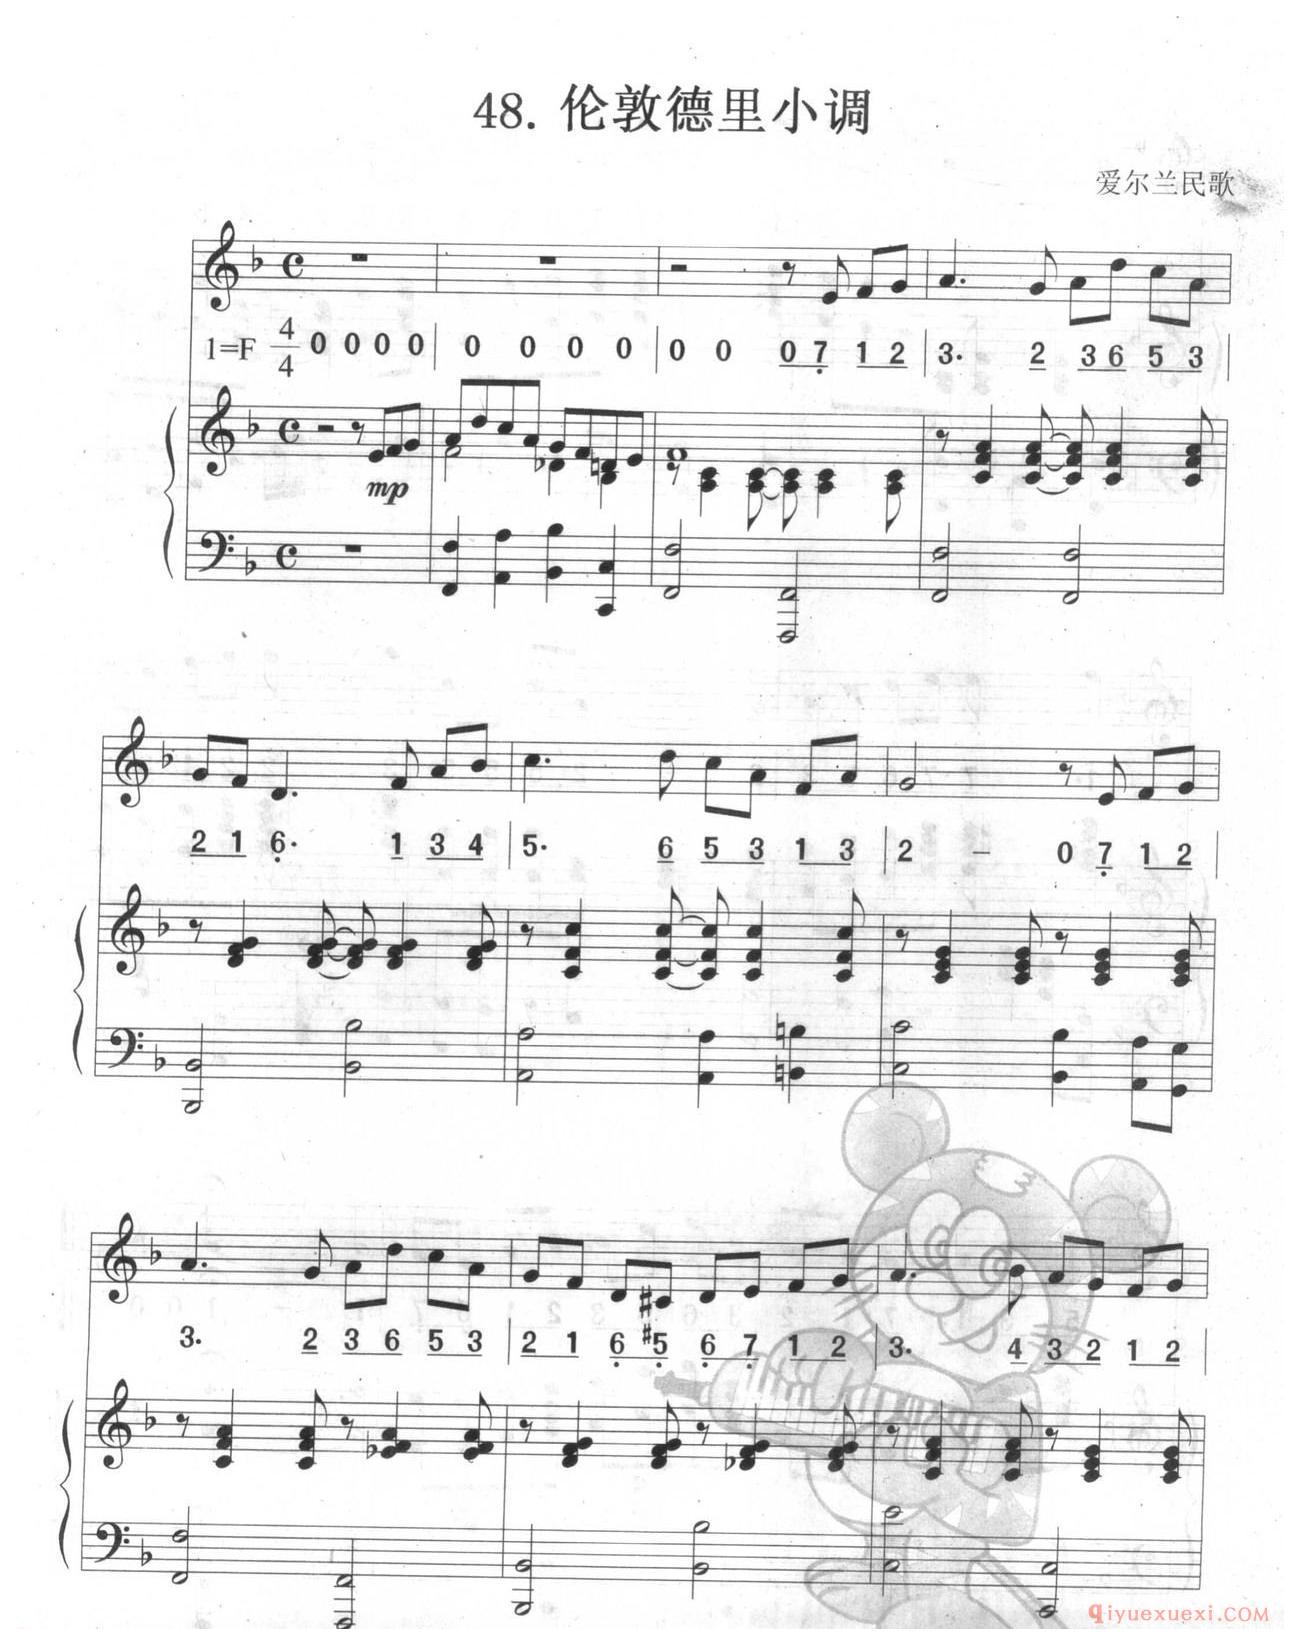 口风琴多声部乐曲《伦敦德里小调(总谱)》加入打击乐的练习